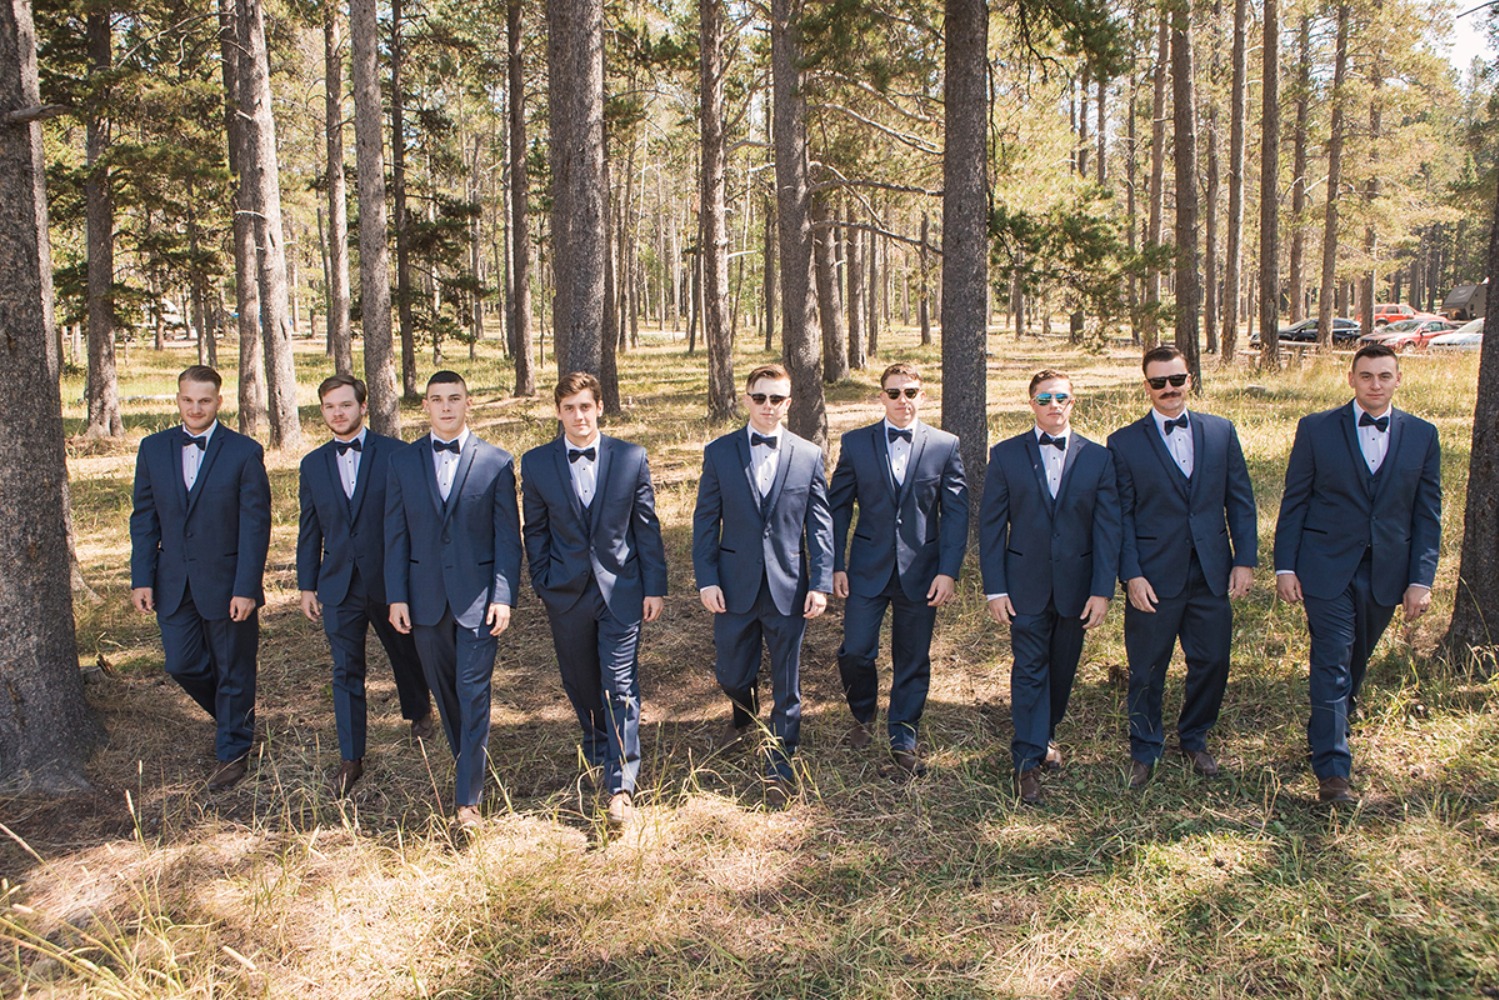 groom and groomsmen in navy blue